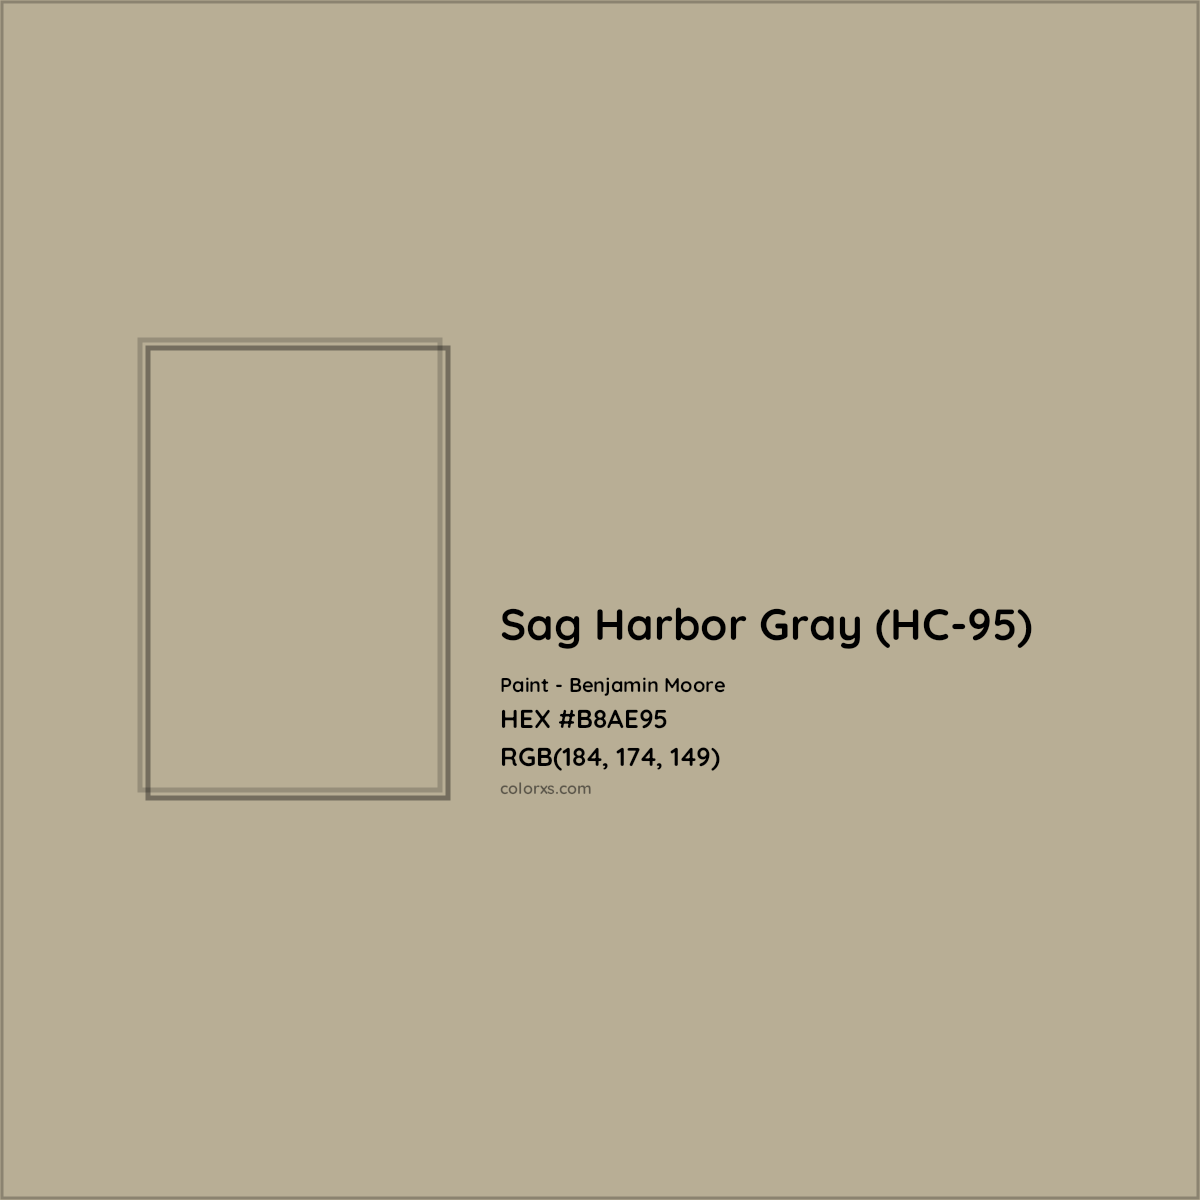 HEX #B8AE95 Sag Harbor Gray (HC-95) Paint Benjamin Moore - Color Code